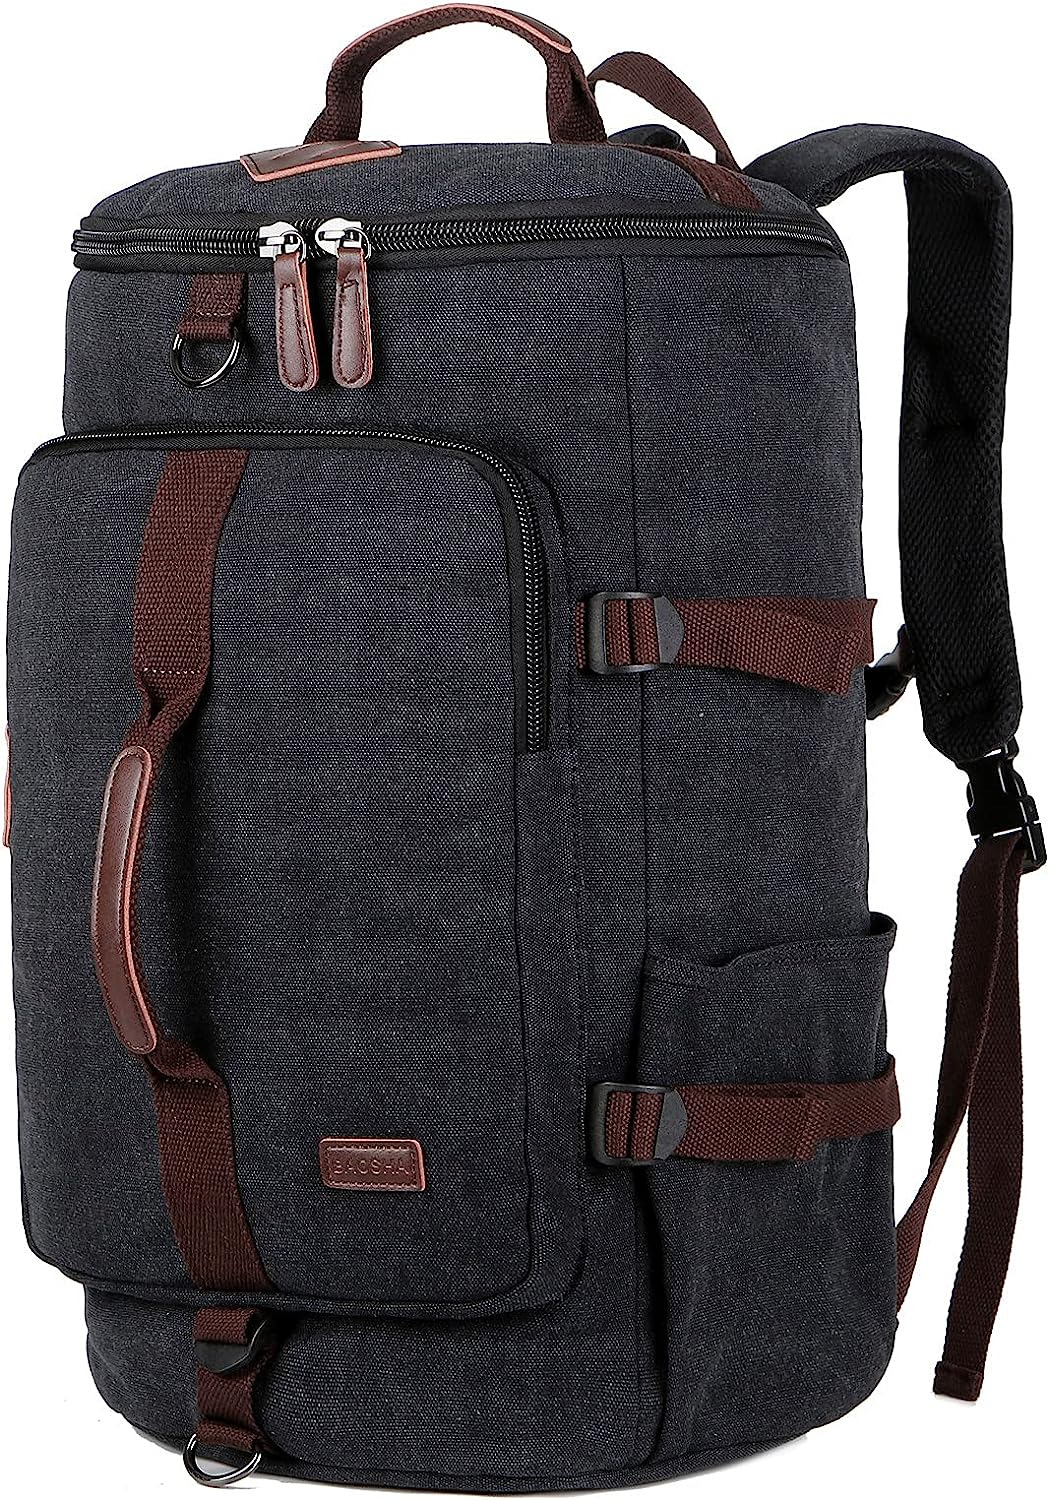 Canvas Weekender Travel Duffel Backpack Hybrid Hiking Rucksack Black